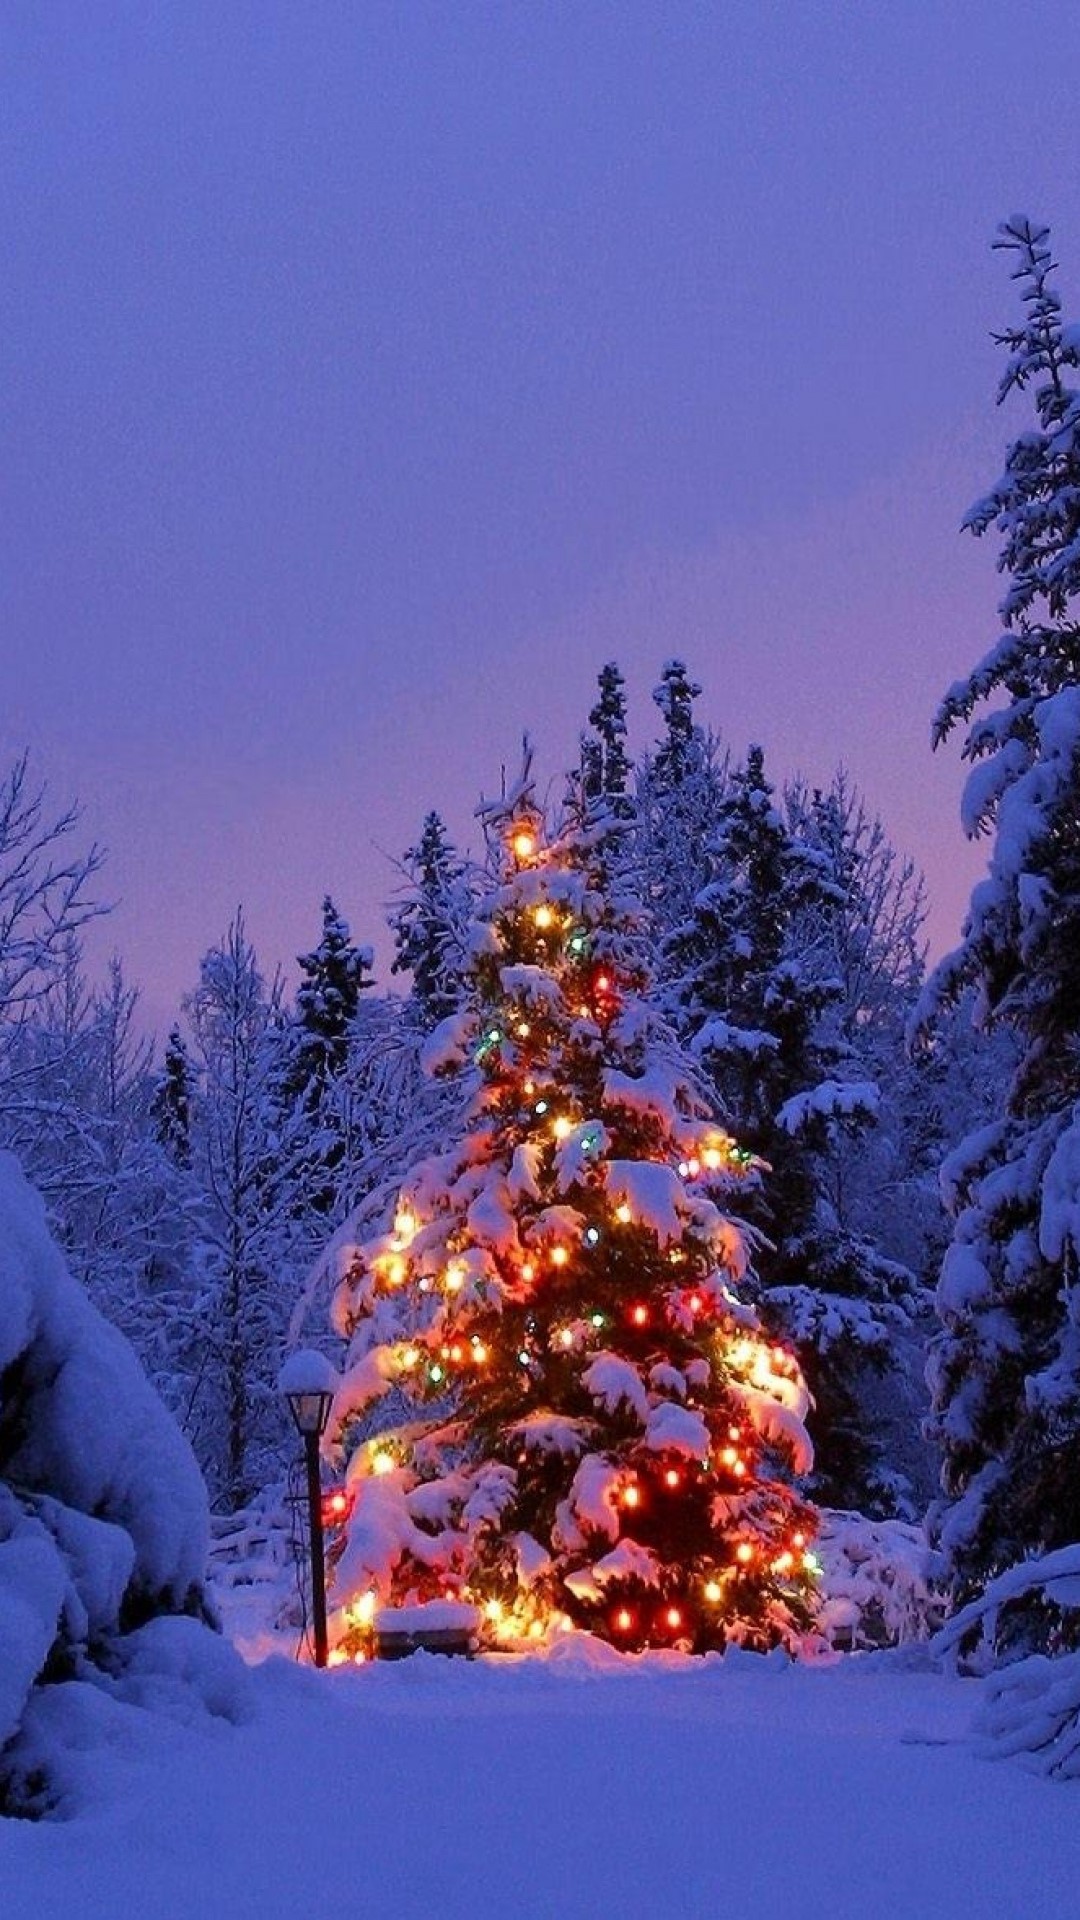 クリスマスの雪の壁紙,クリスマスツリー,木,冬,クリスマスの飾り,雪